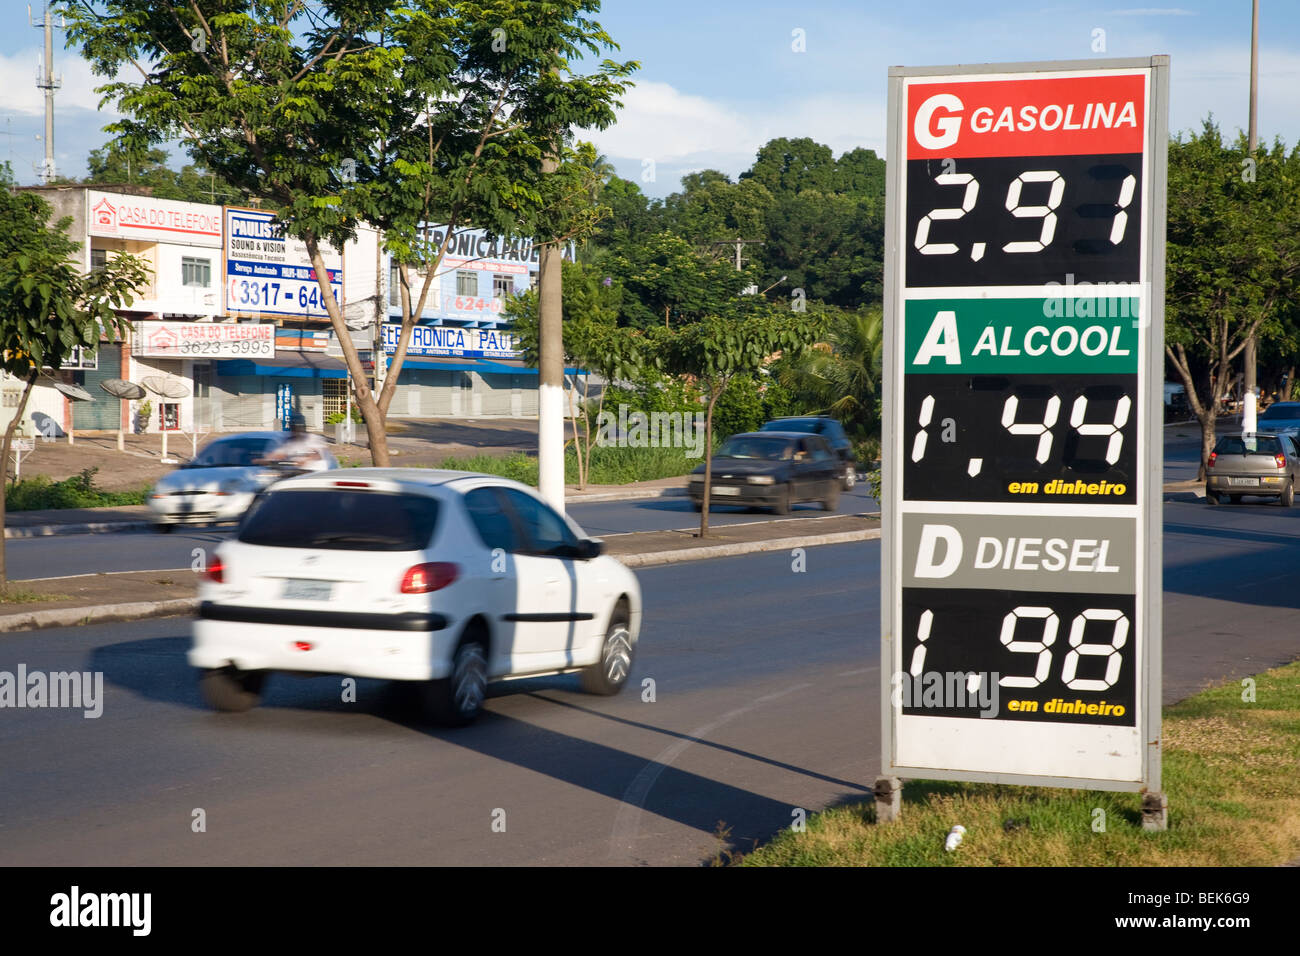 Eine Kraftstoff-Preisliste für Gas, Ethanol und Diesel am Straßenrand. Cuiaba, Mato Grosso, Brasilien. Stockfoto